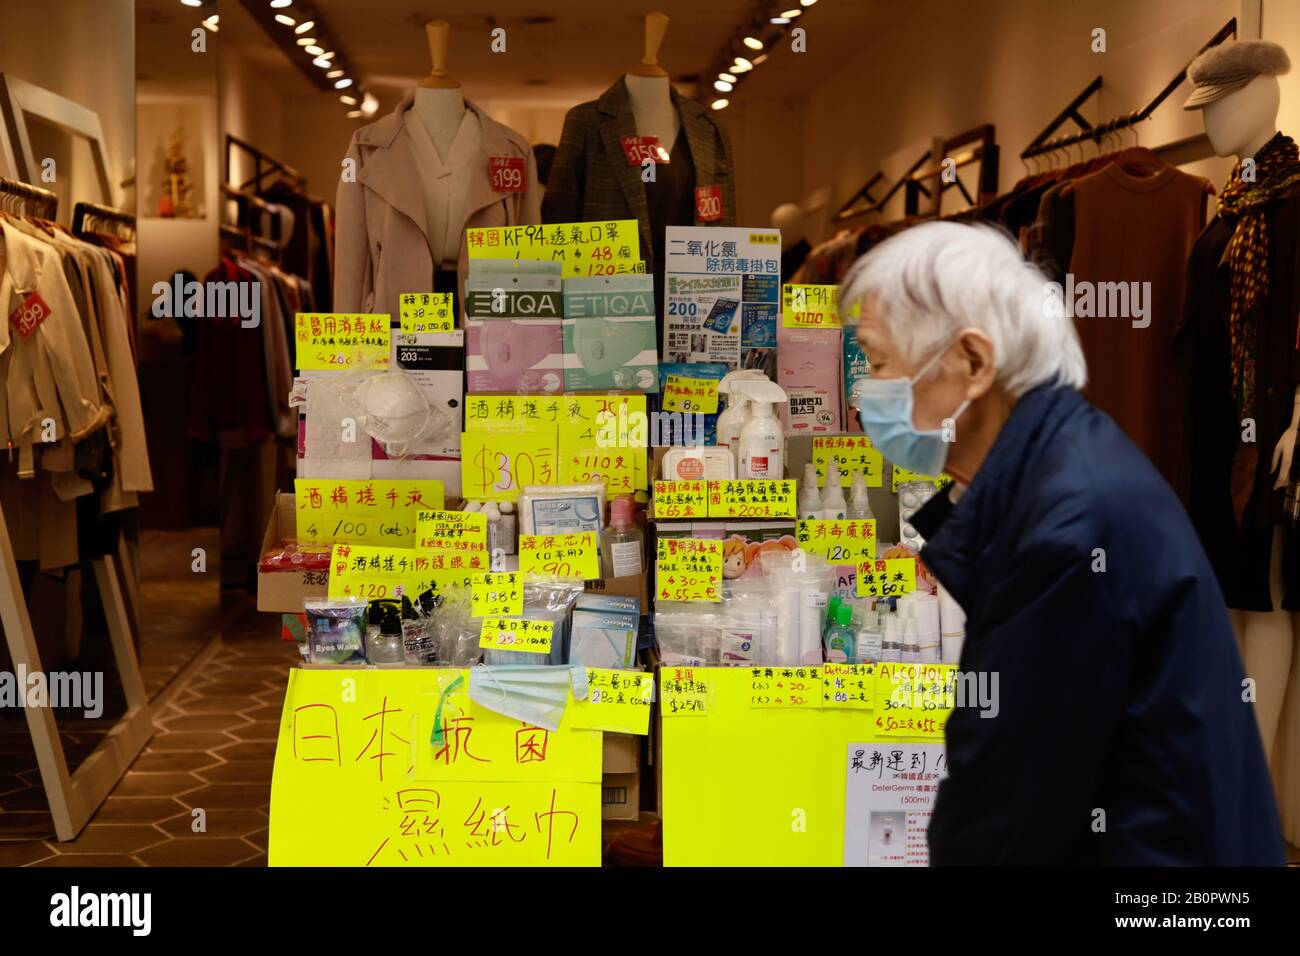 Hong Kong, CHINE. 21 février 2020. La vente de produits antiseptiques a grimpé en flèche, de sorte que même une boutique de mode s'est jointe à, voulant avoir part dans le seul commerce en plein essor en ville pour le moment, LA VENTE DE PRODUITS ANTISEPTIQUES. Les produits antiseptiques de toutes sortes, généralement les masques pour le visage ( masques chirurgicaux ), l'alcool isopropylique, les gommages à la main d'alcool sont en très court approvisionnement dans tous les points de vente au détail en ville depuis l'éclosion de coronavirus introduit par La Pneumonie d'origine chinoise sur le continent. 21 Févr. 2020 Hong Kong.Zuma/Liau Chung-Ren Crédit: Liau Chung-Ren/Zuma Wire/Alay Live News Banque D'Images